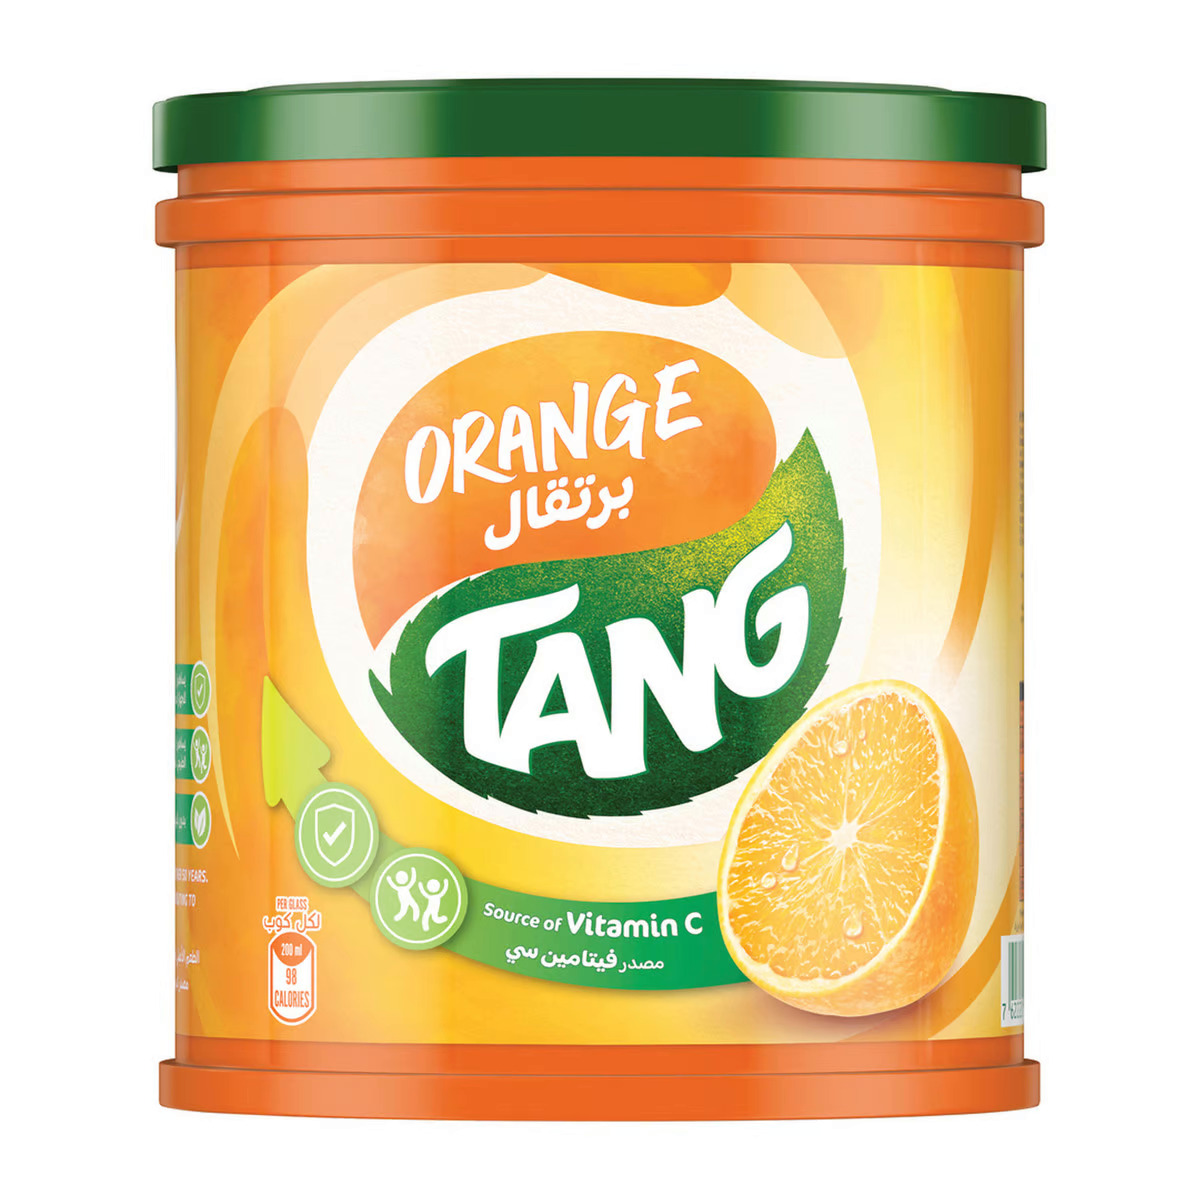 Tang Orange 2 Kg